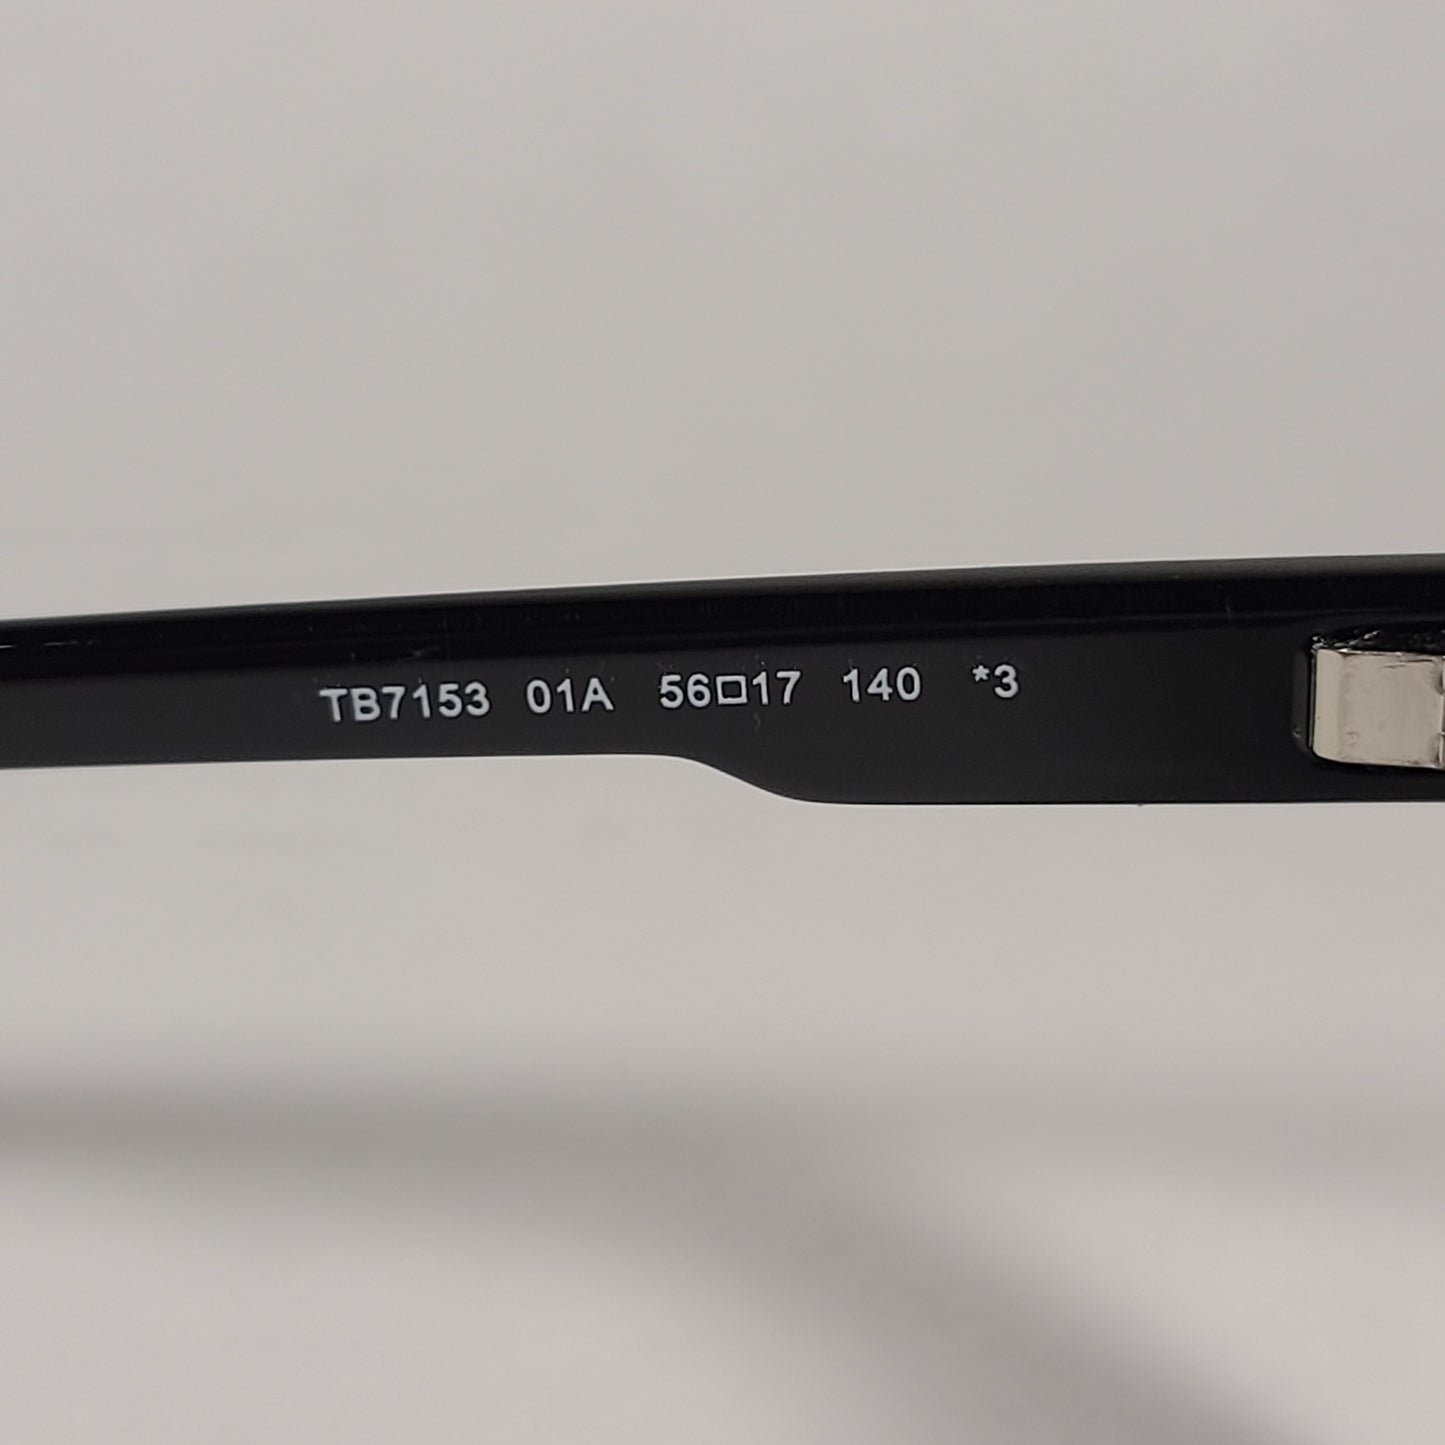 Timberland Rectangular Sunglasses Shiny Black Frame Gray Lens TB7153 01A - Sunglasses